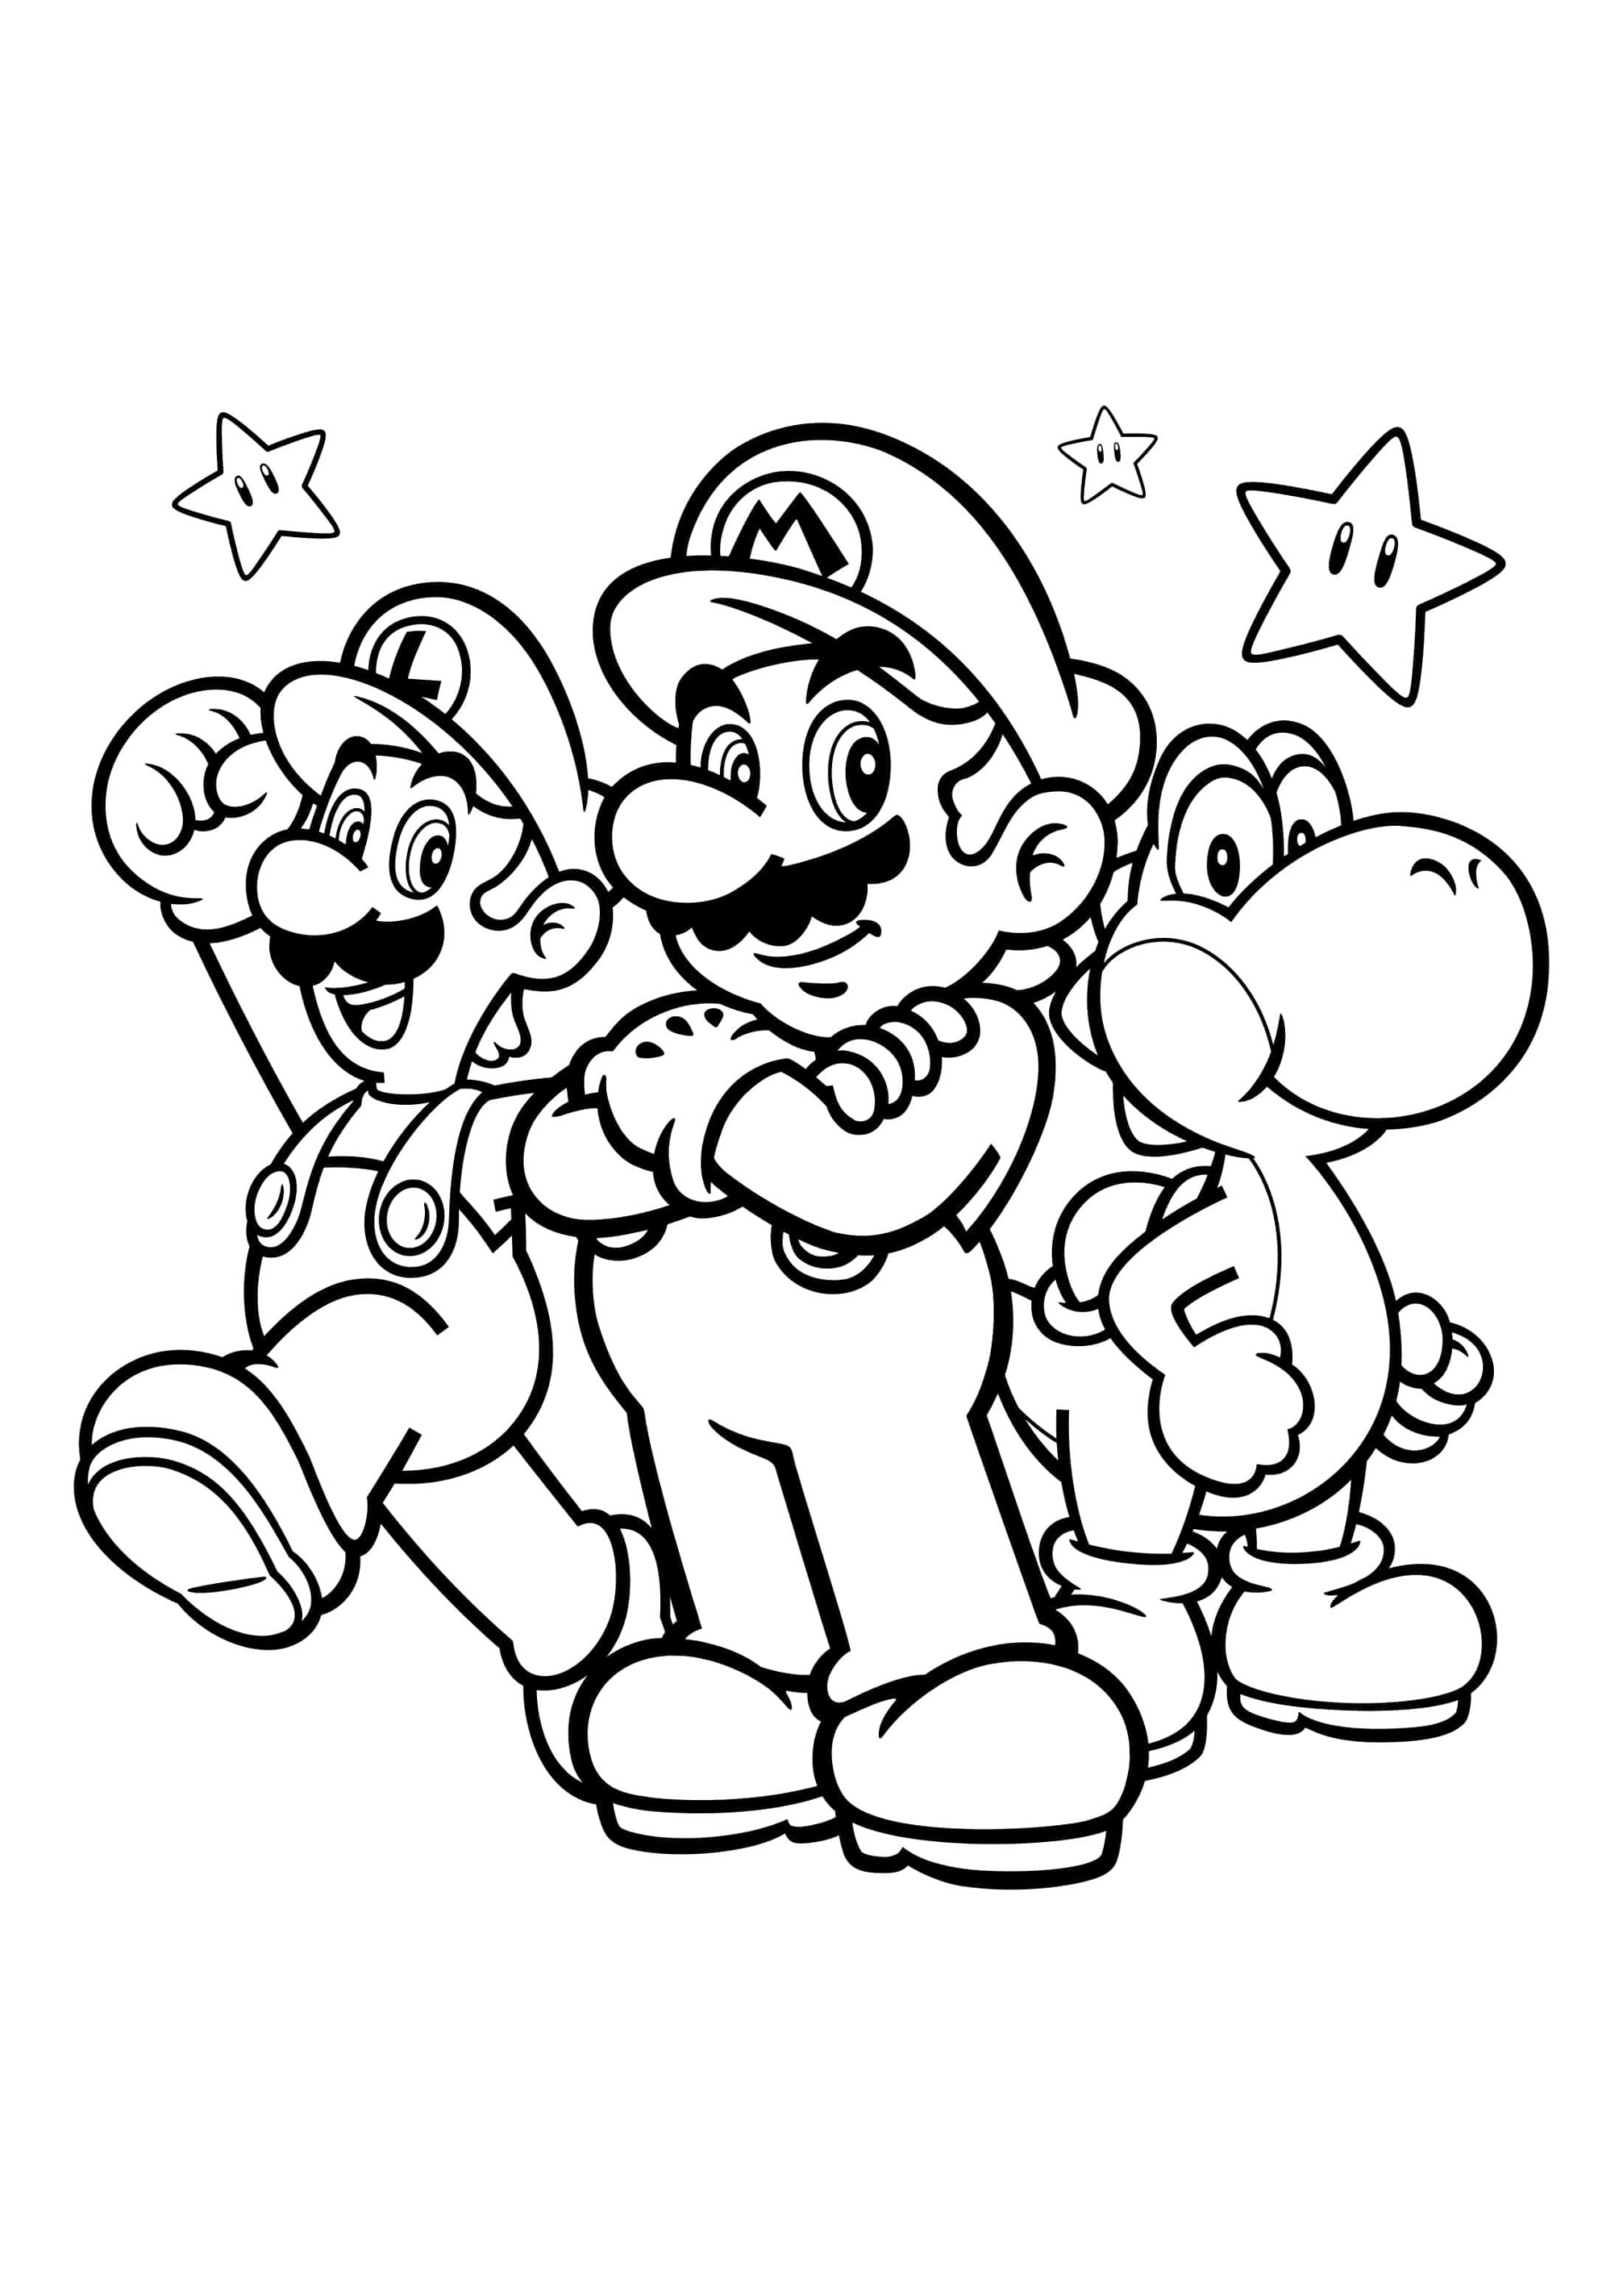 Drie hoofdpersonen van het spel Super Mario